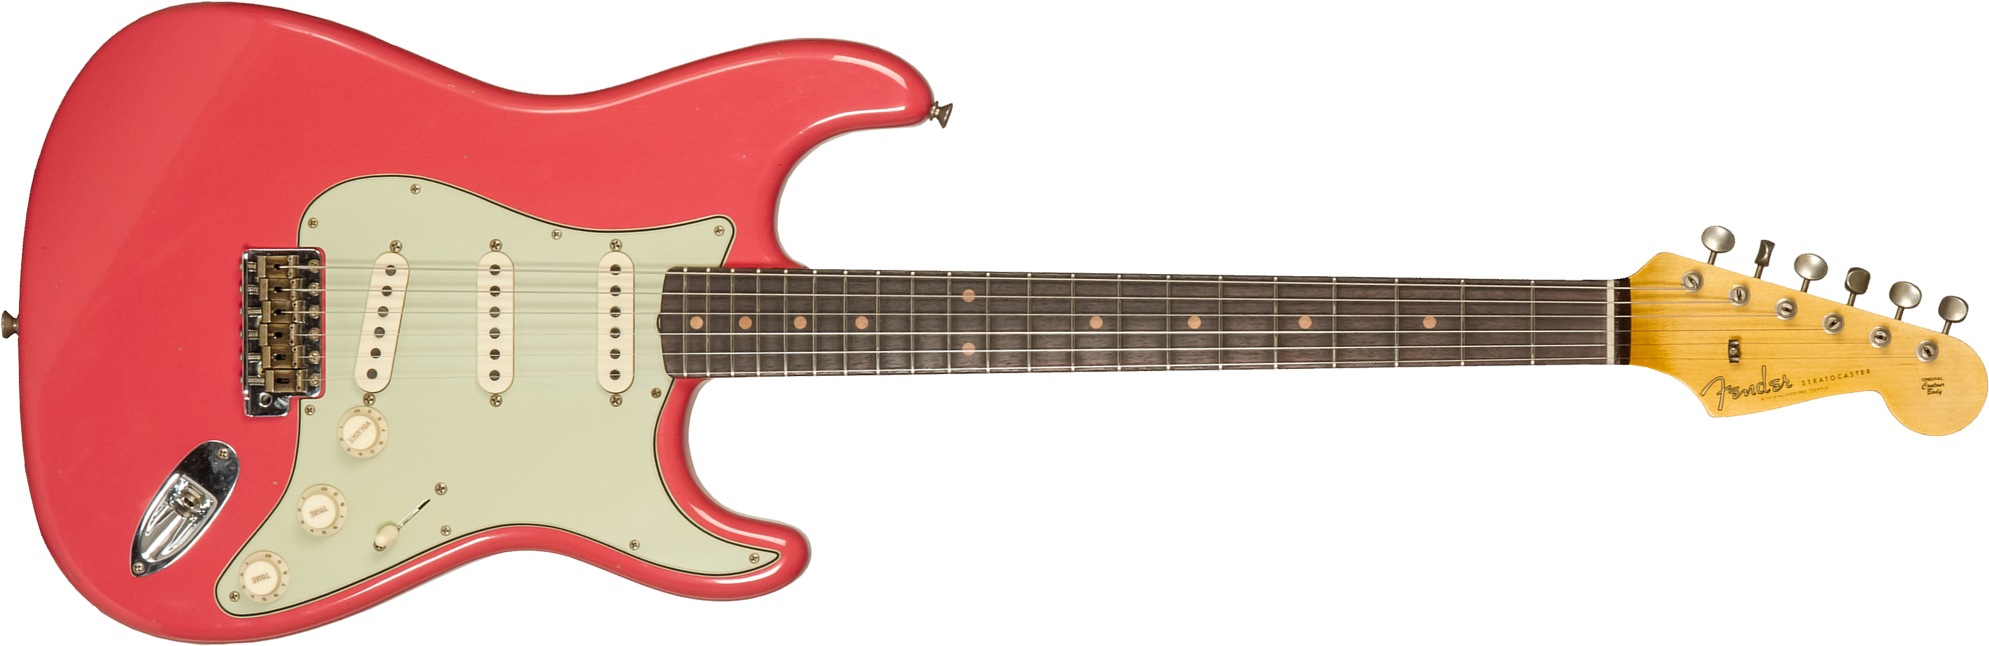 Fender Custom Shop Strat 1959 3s Trem Rw #cz571088 - Journeyman Relic Aged Fiesta Red - Elektrische gitaar in Str-vorm - Main picture